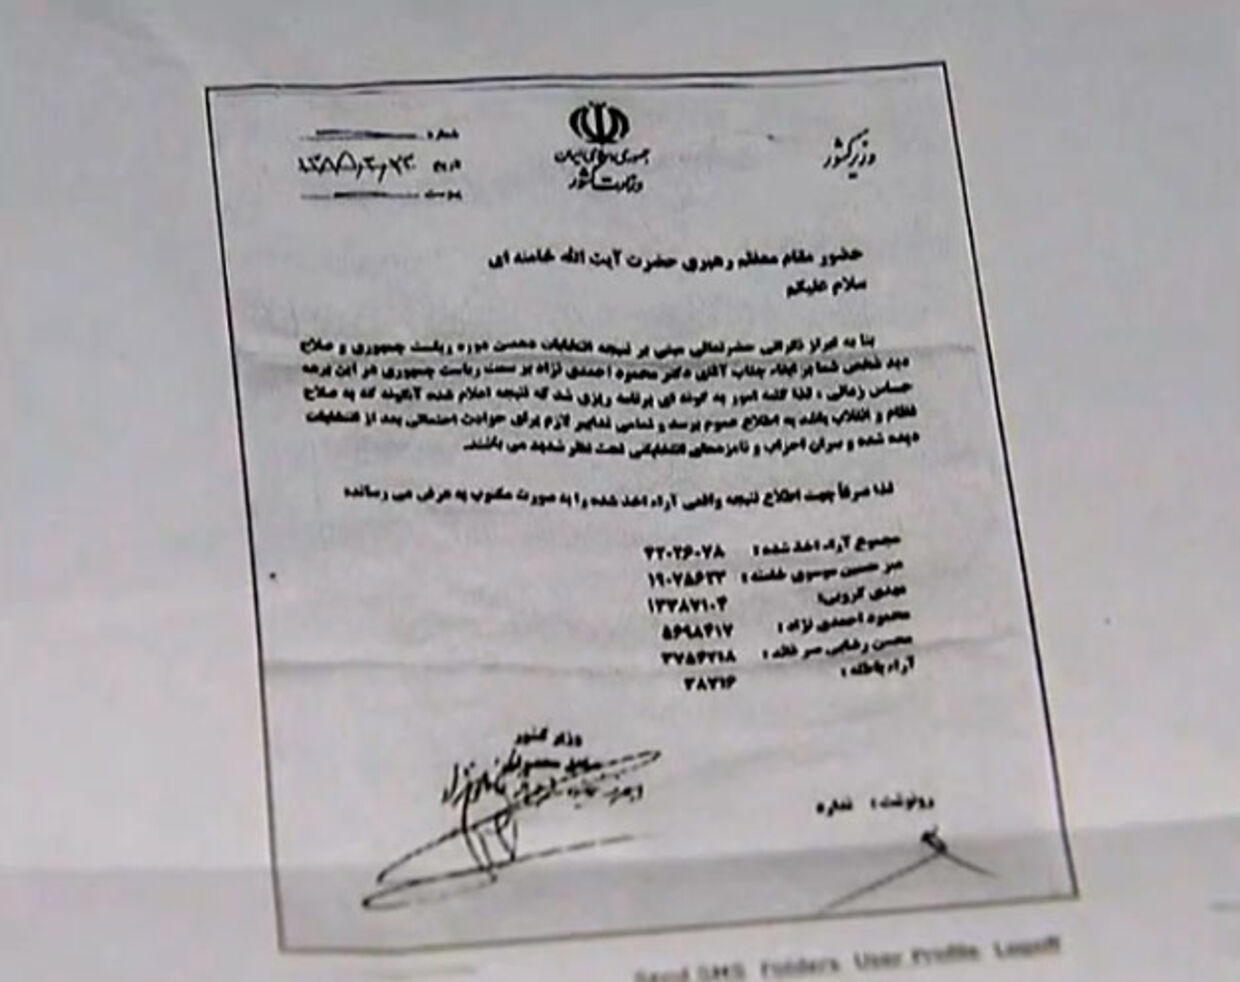 Brevet der angiveligt beviser at der er blevet svindlet med valgresultatet i Iran.